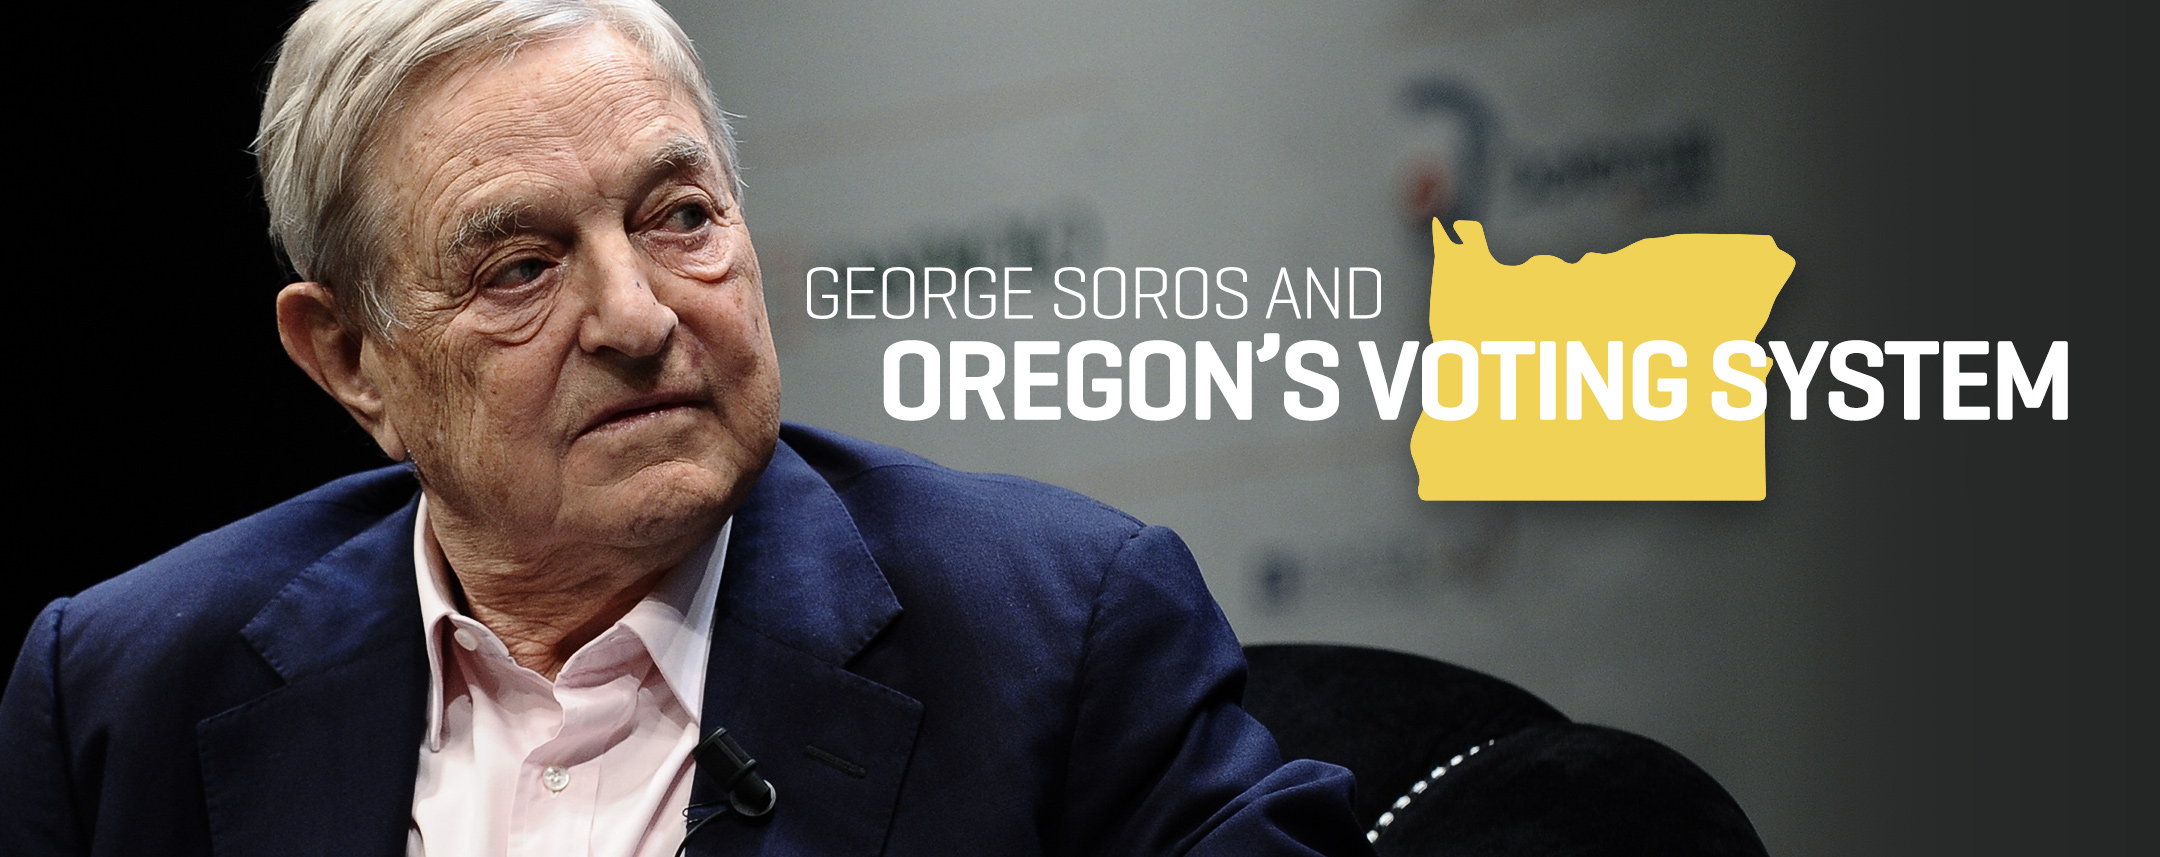 George-Soros-FEATURED.jpg